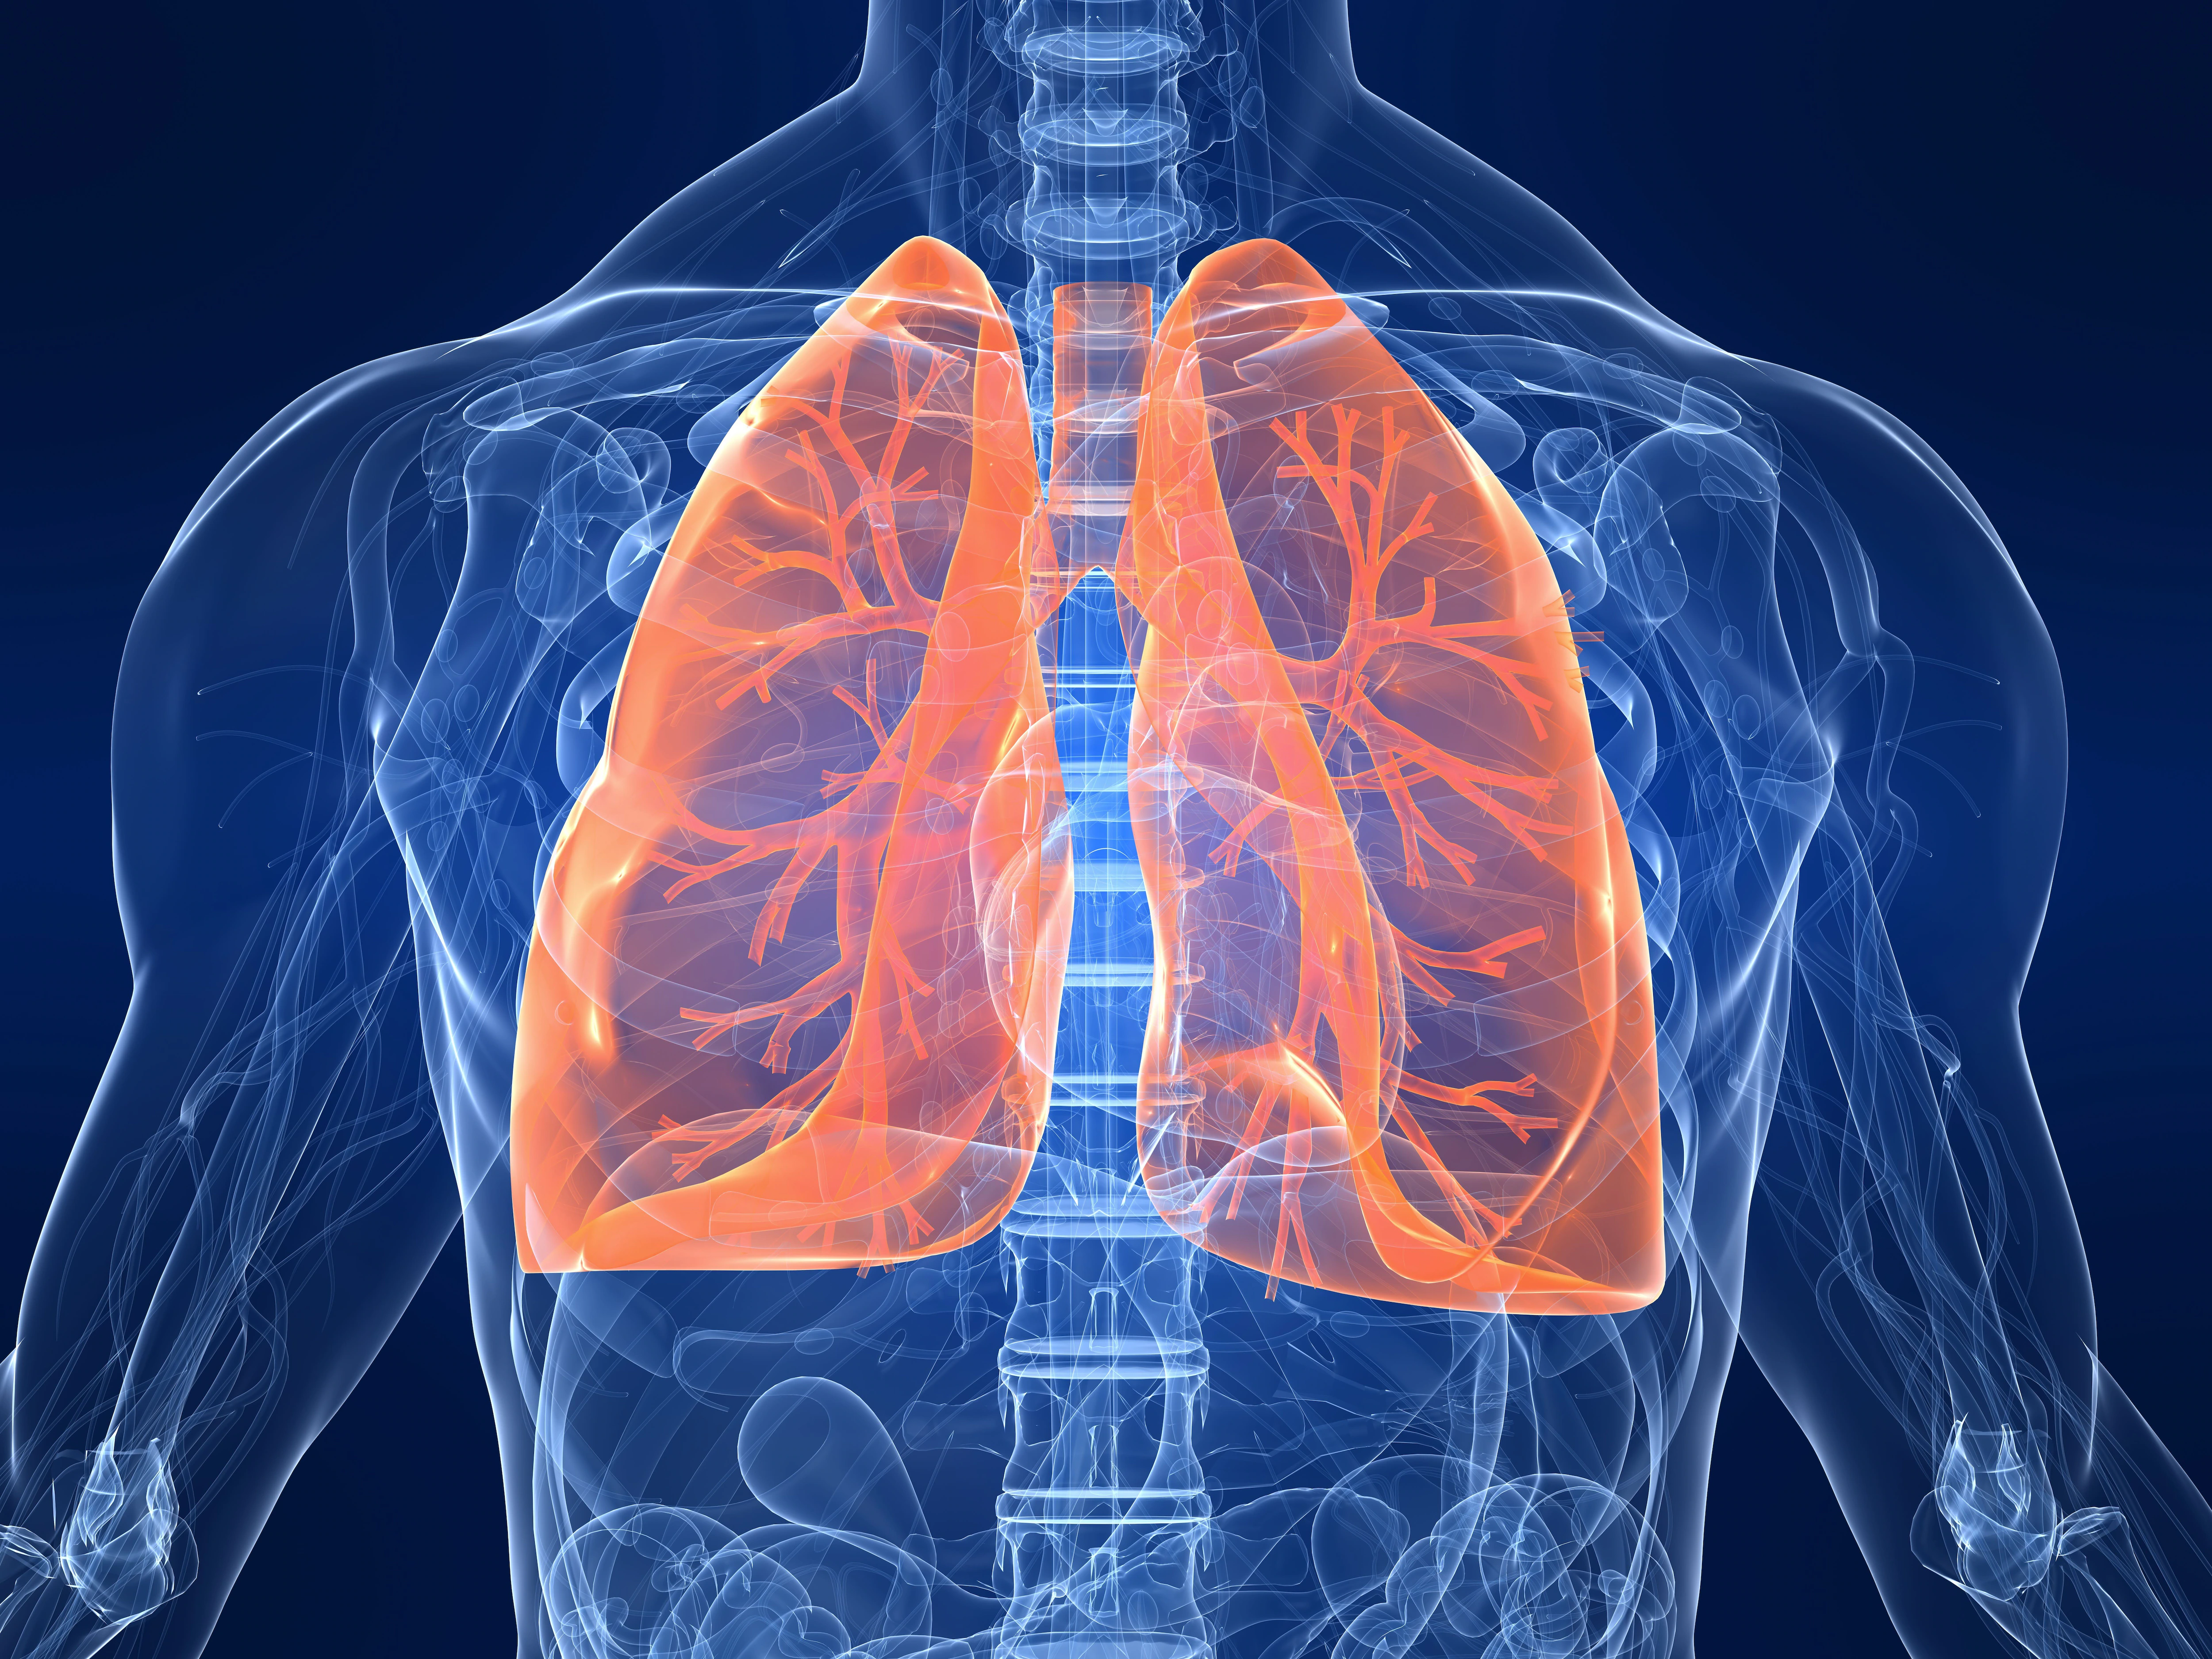 La densitometría detecta alteraciones pulmonares en fumadores asintomáticos